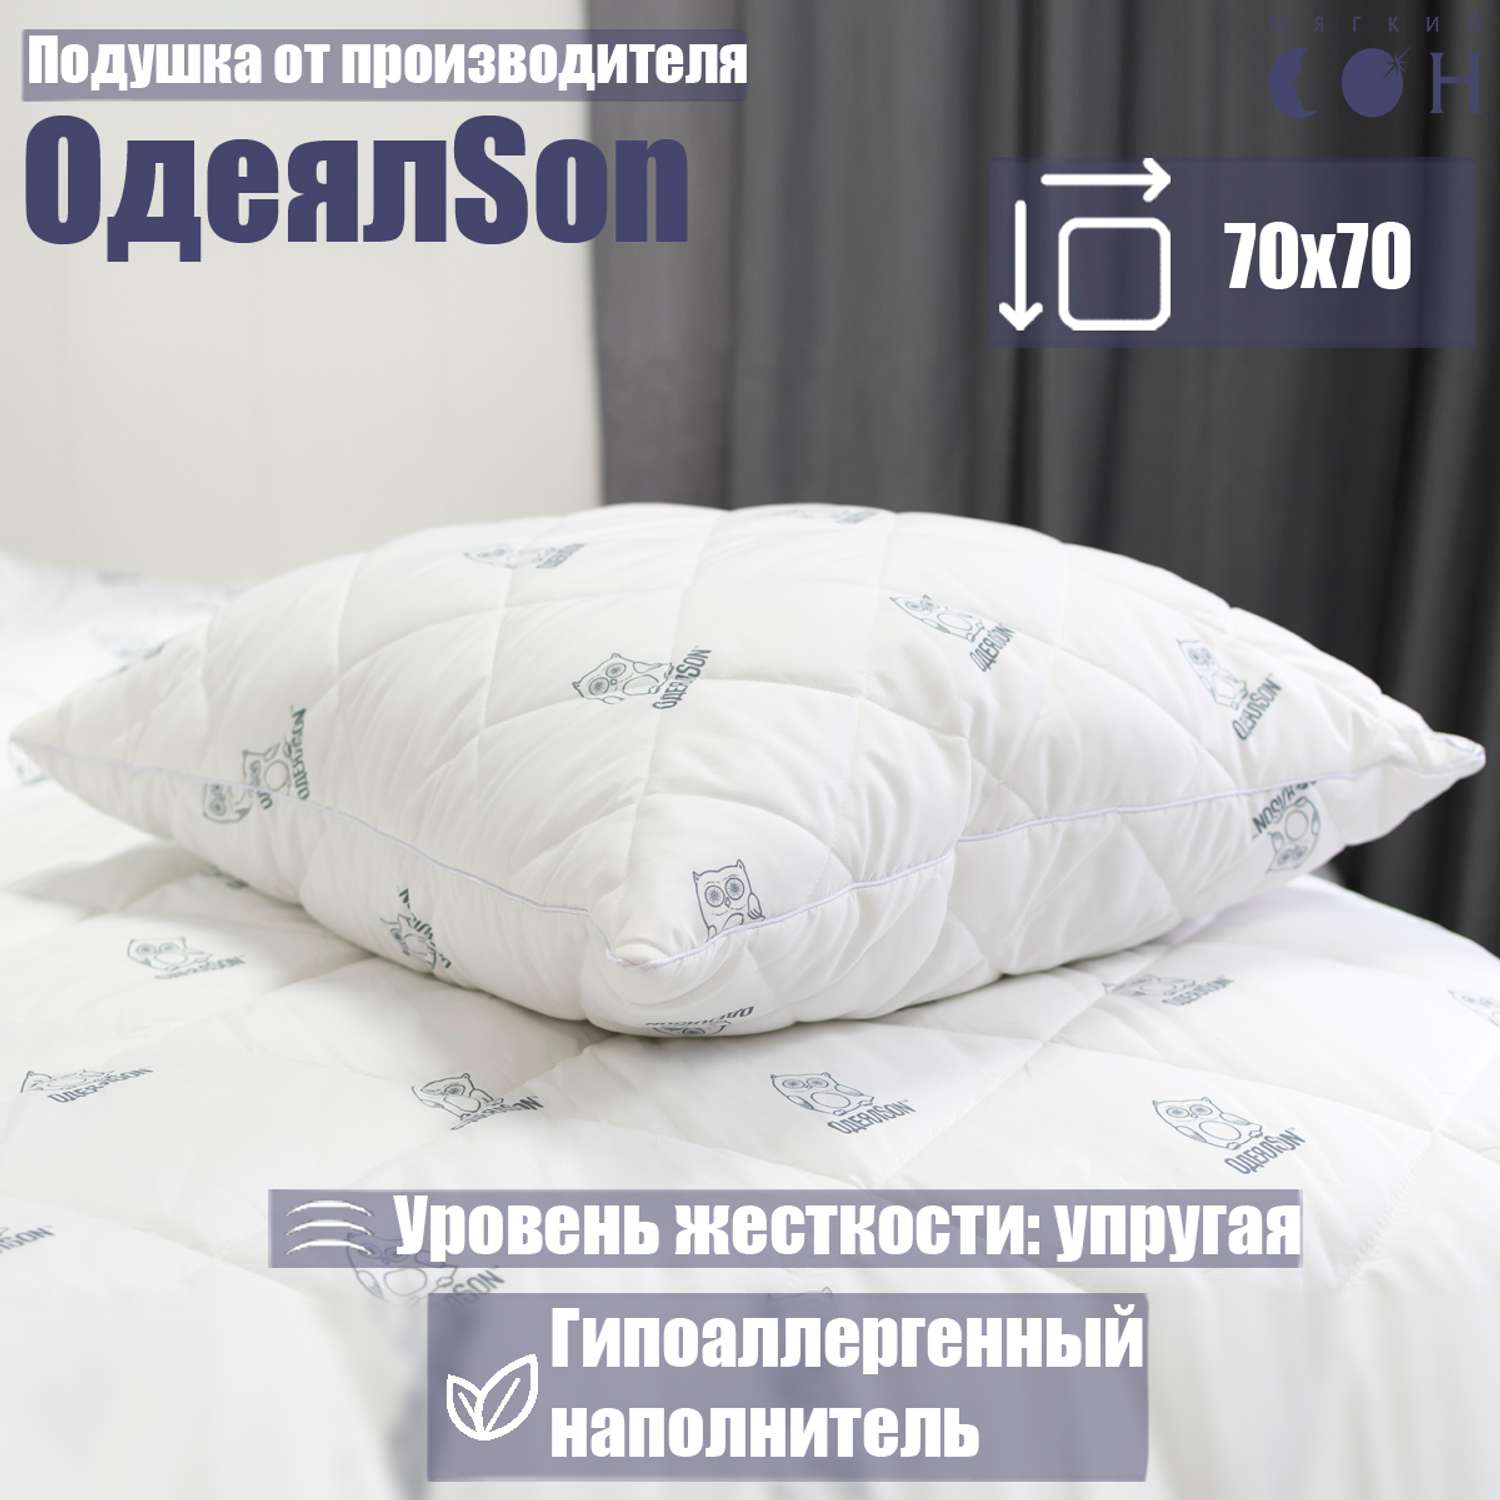 Подушка Мягкий сон одеялсон 70x70 см - фото 1